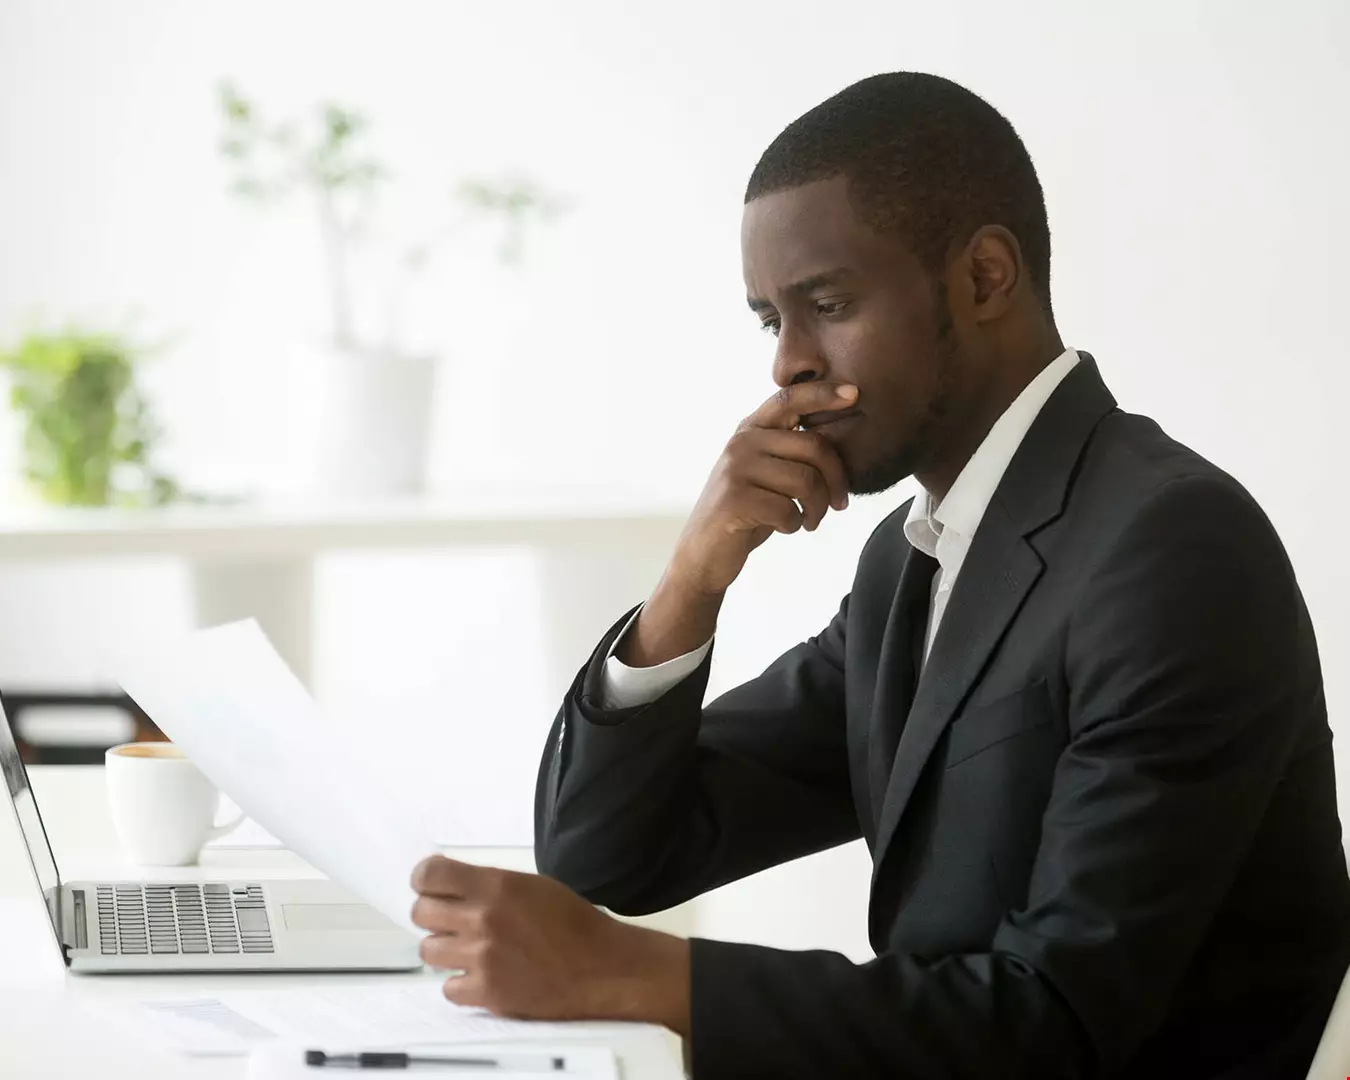 En man i mycket prydliga kontorskläder, kostym, sitter vid dator. Håller i ett papper, ser mycket bekymrad ut och har en hand framför munnen i en djupt fokuserad gest.